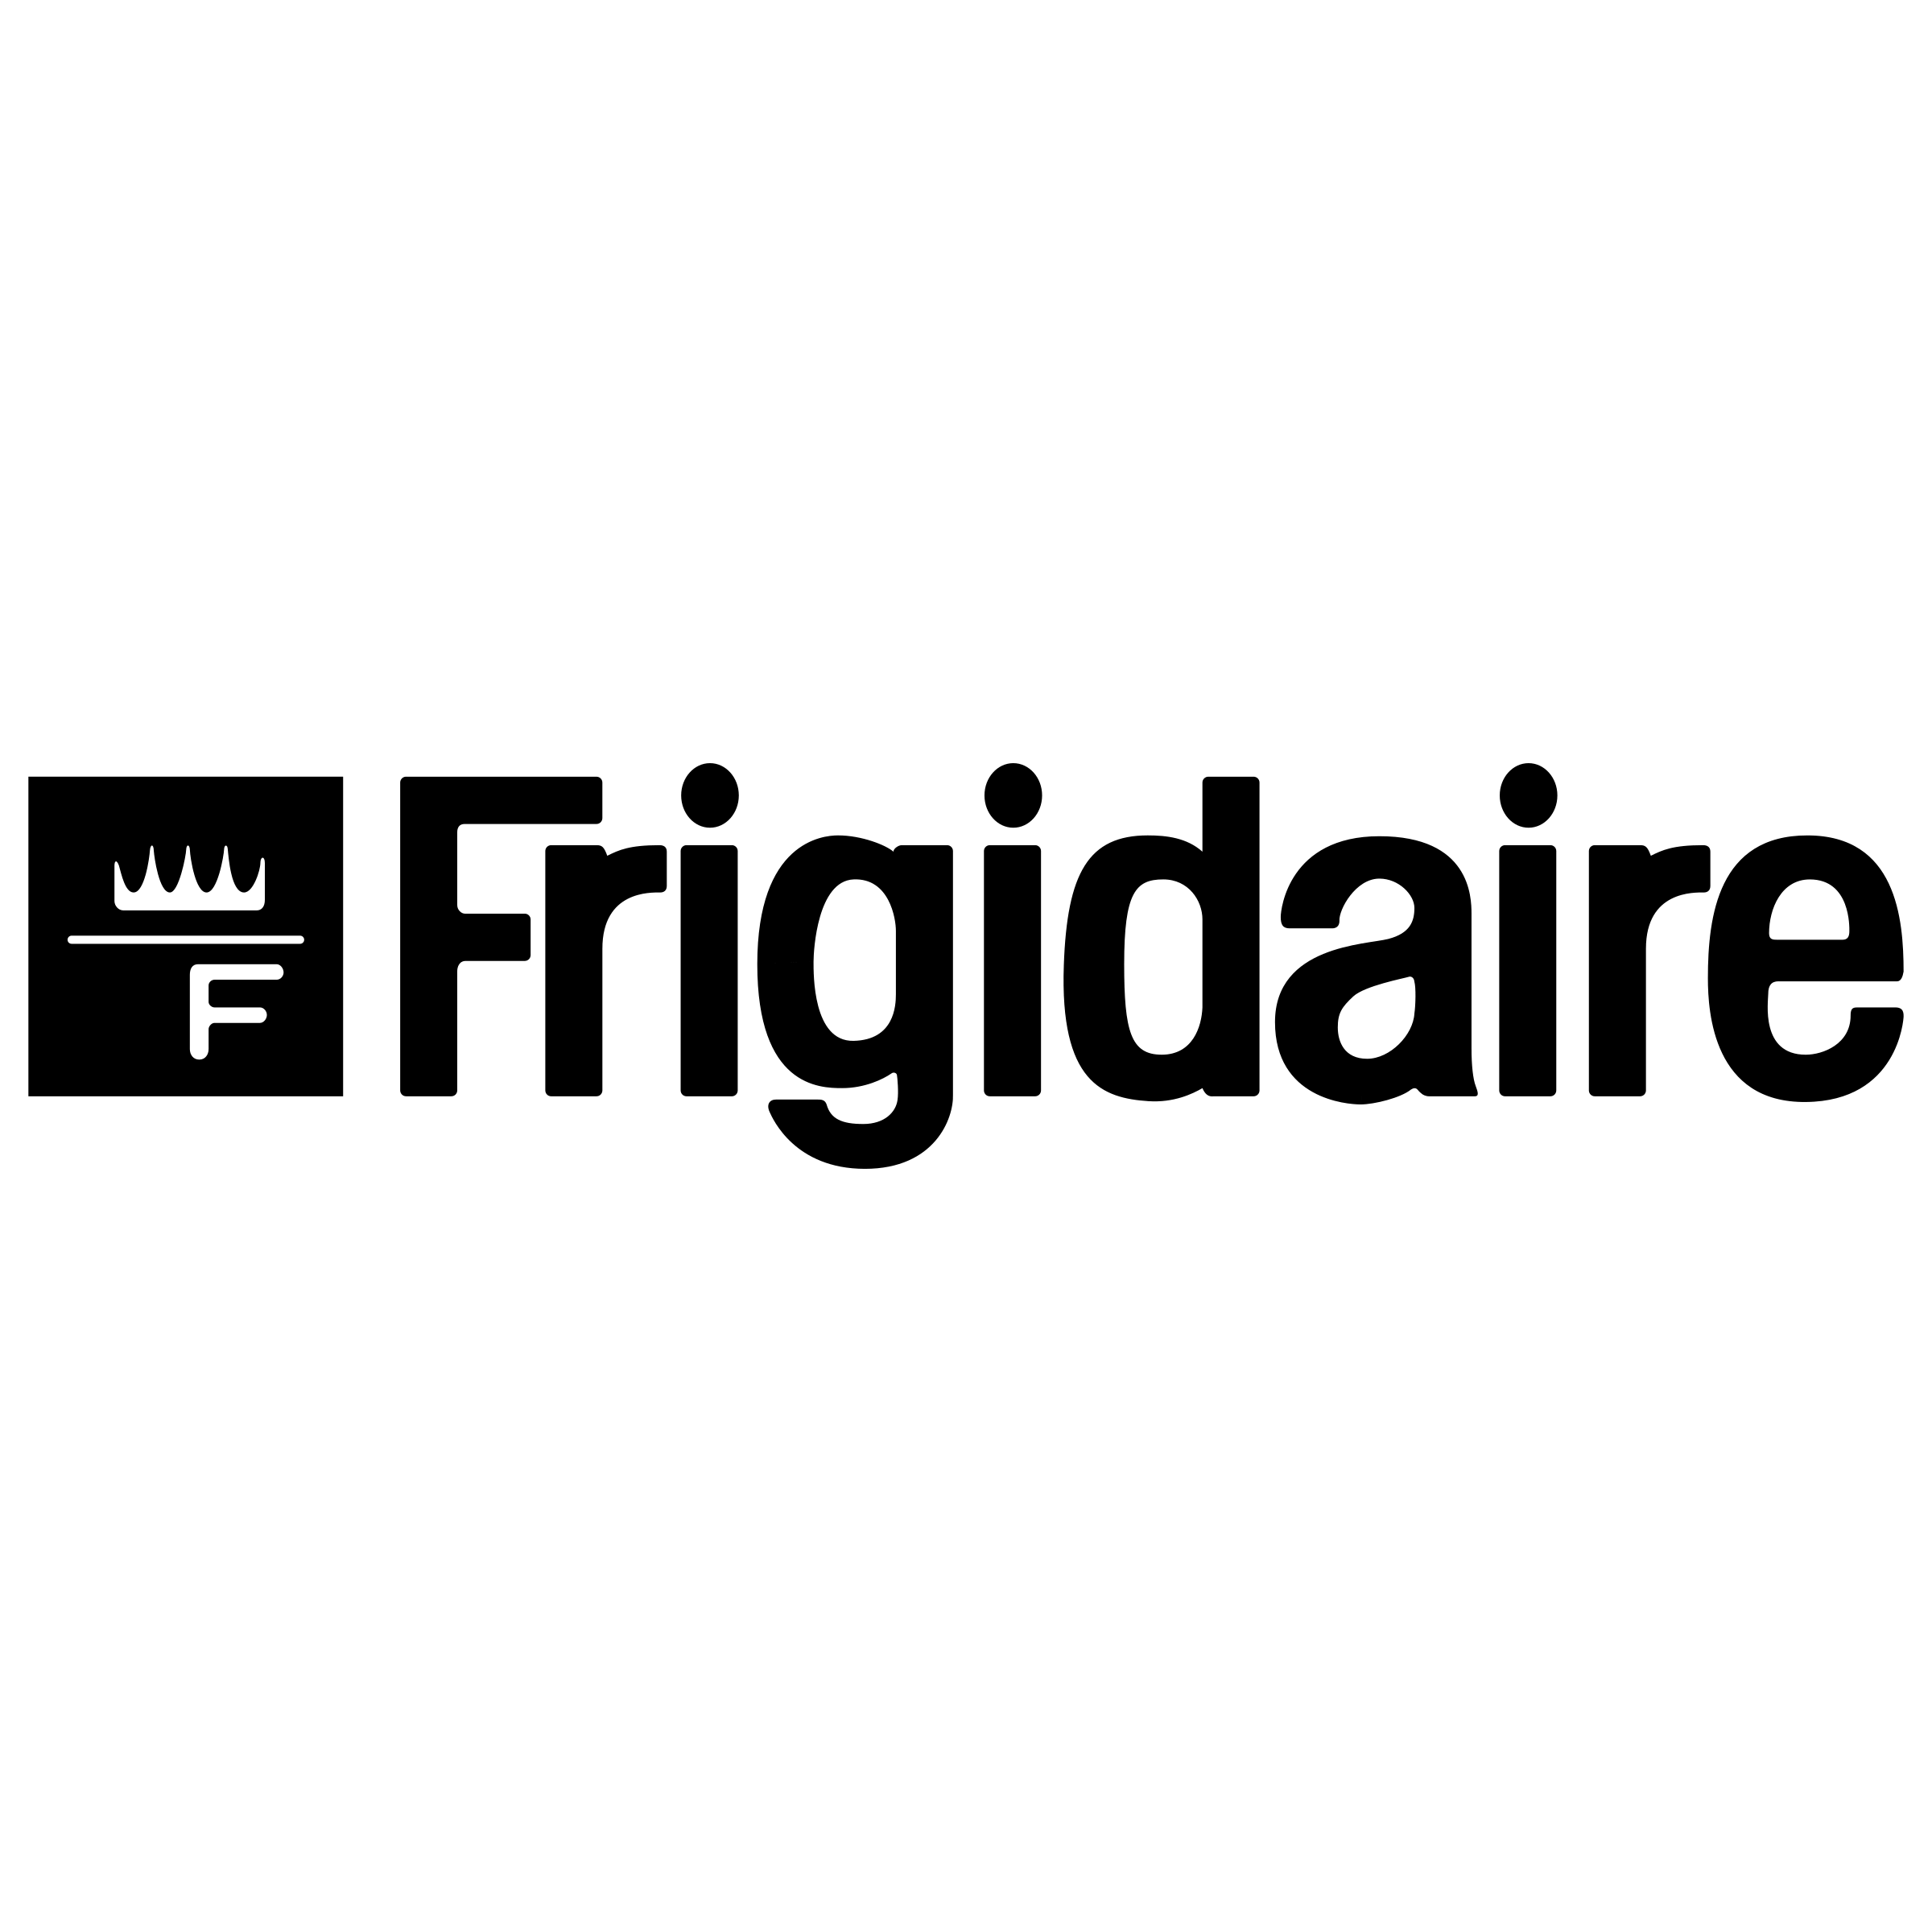 Frigidiare Logo - Frigidaire Logo PNG Transparent & SVG Vector - Freebie Supply